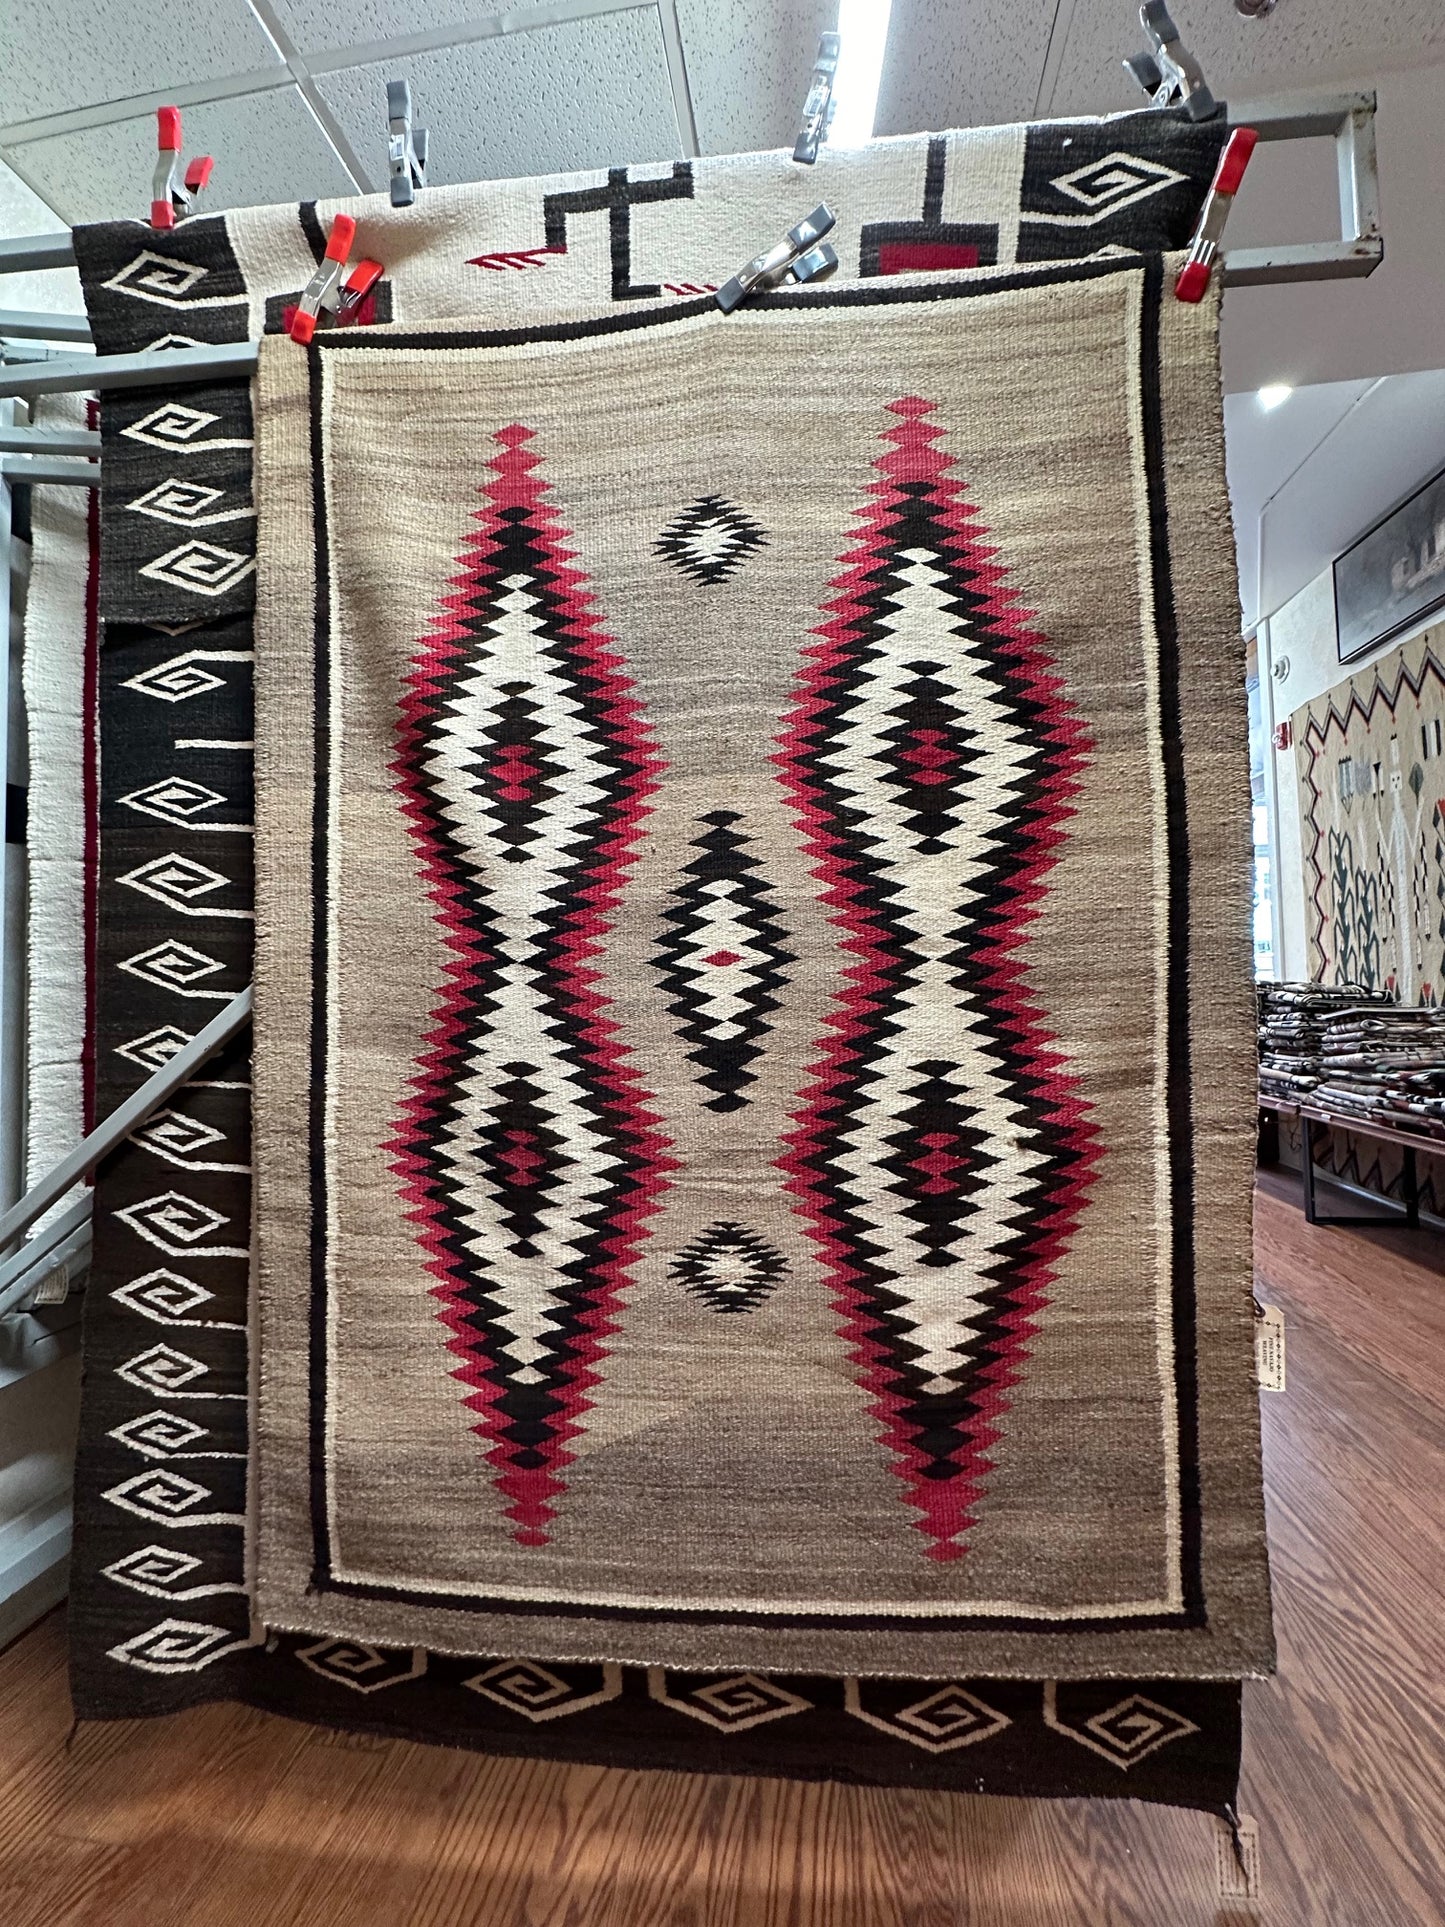 JB Moore Crystal Navajo weaving for sale, navajo rug for sale, antique navajo weaving, telluride gallery